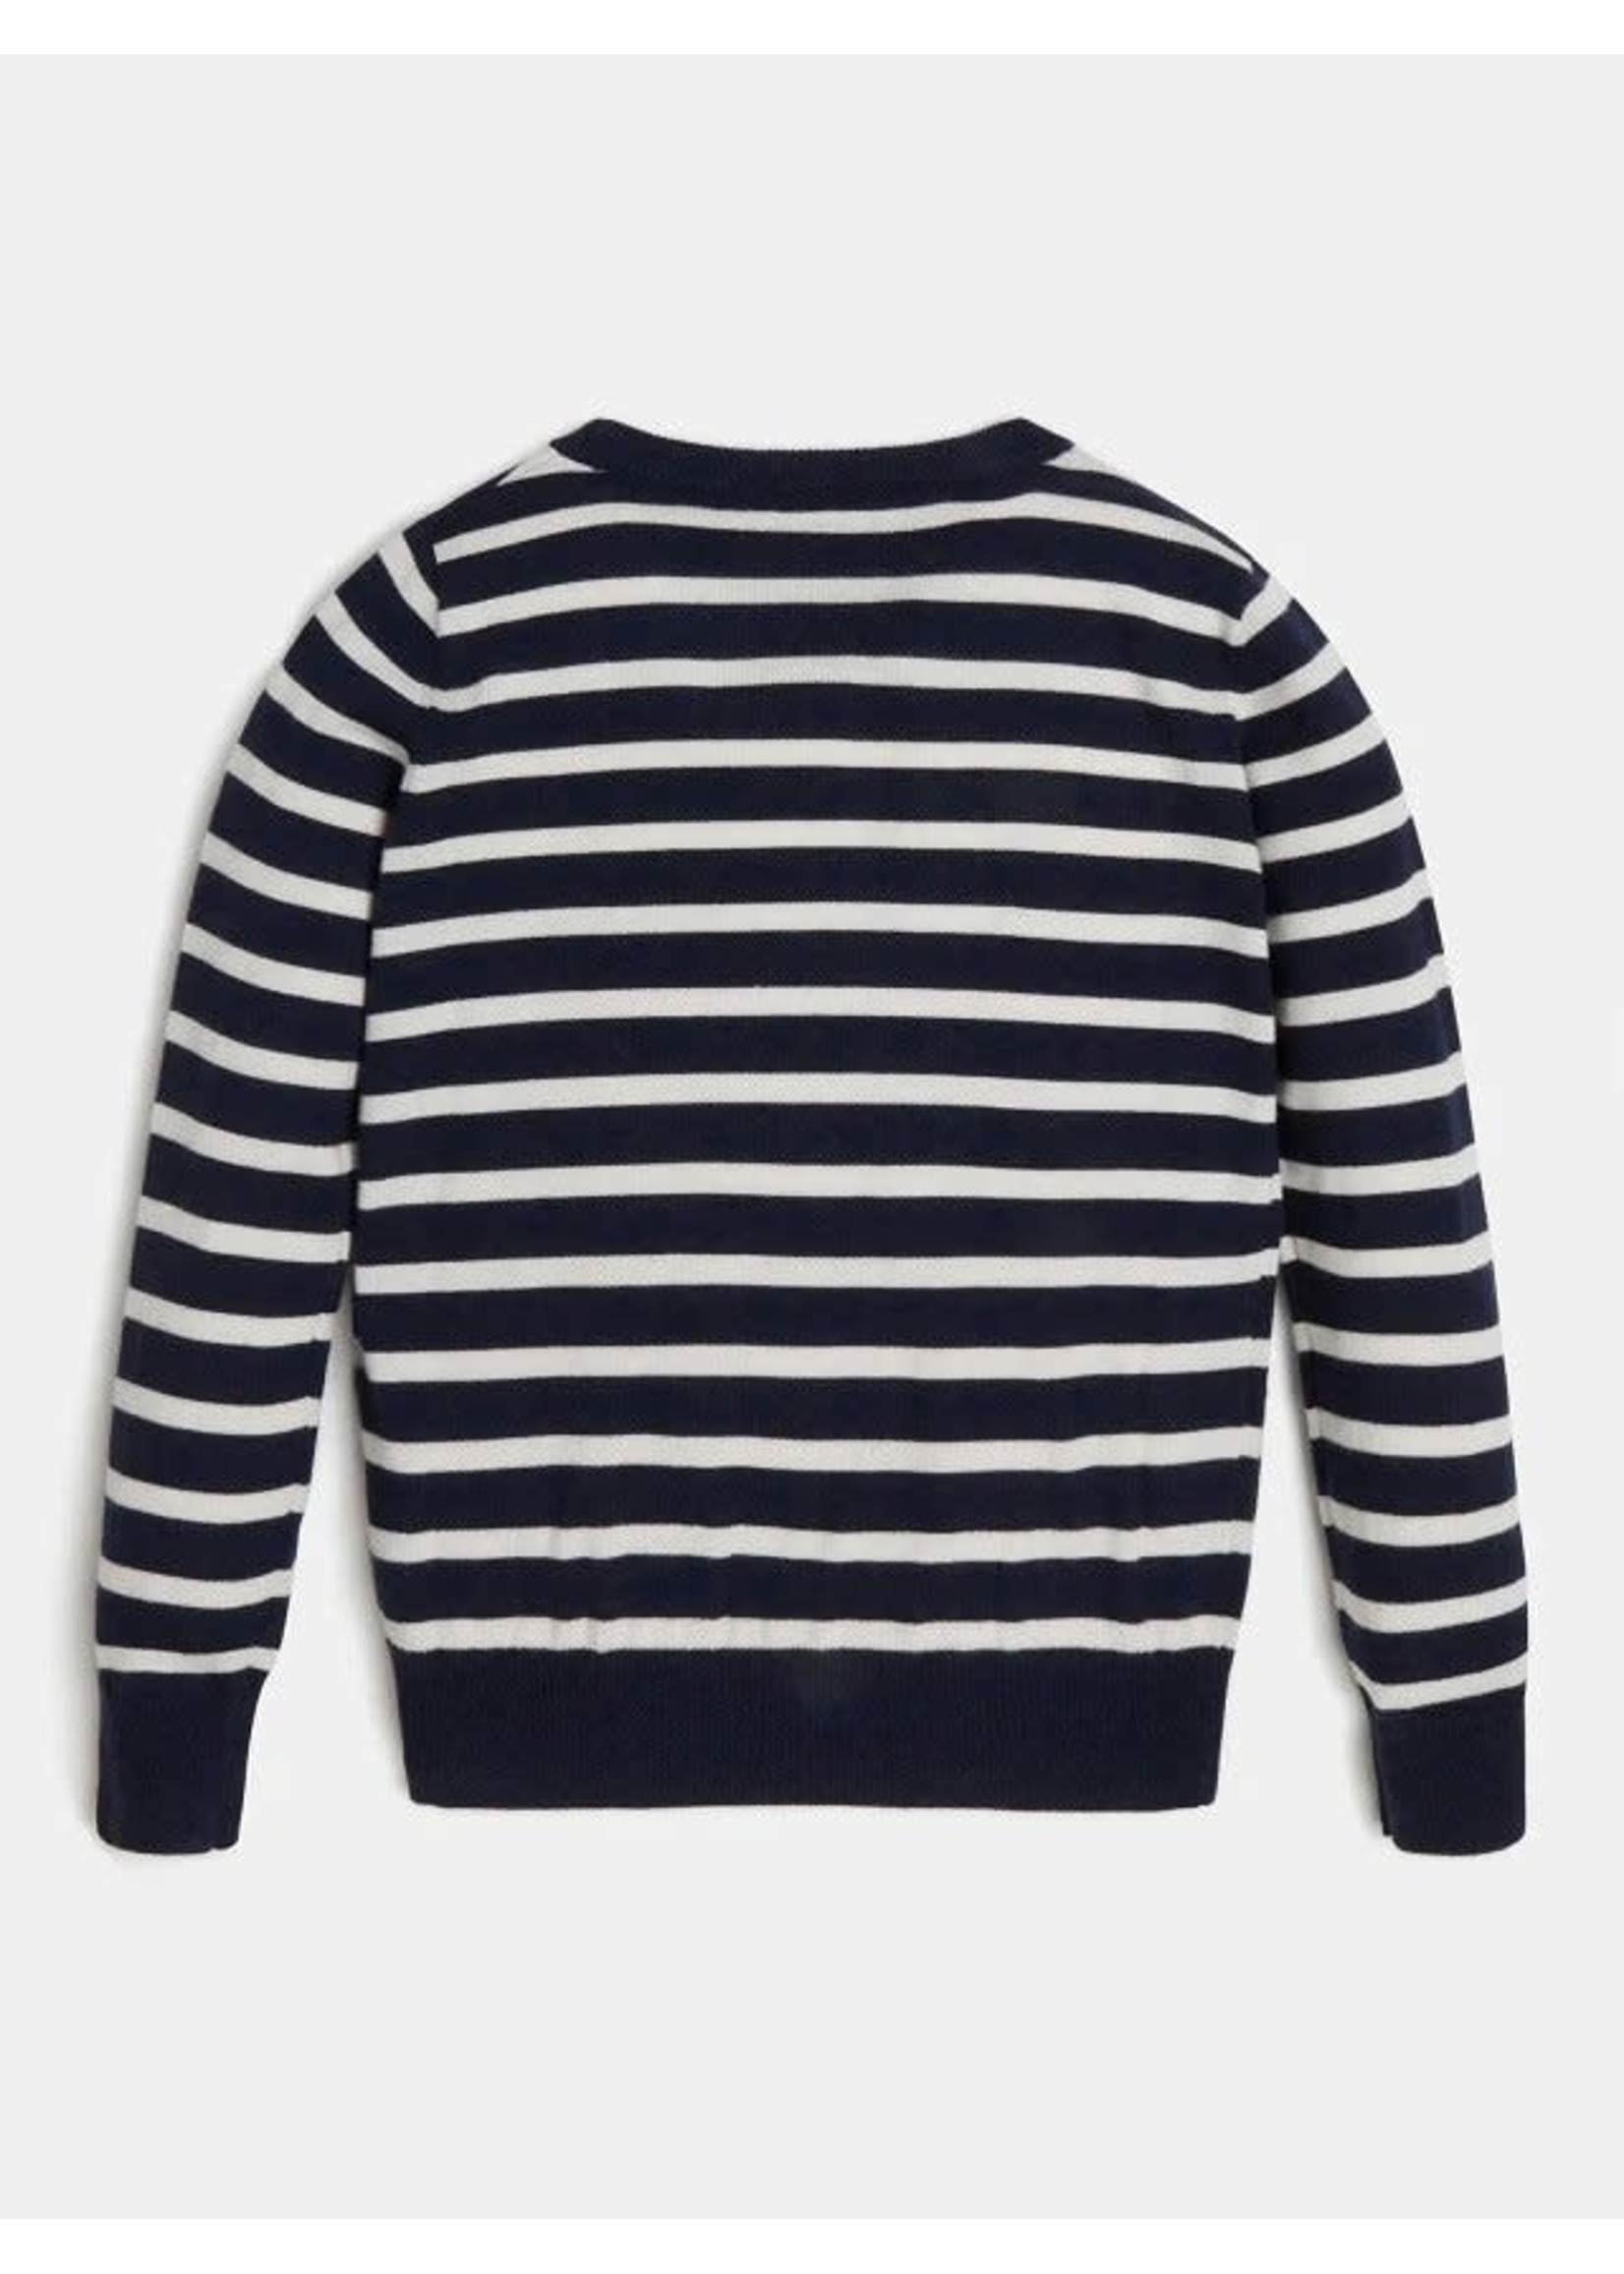 Guess Guess Boy sweater stripes blue stone - L2R04 Z3052